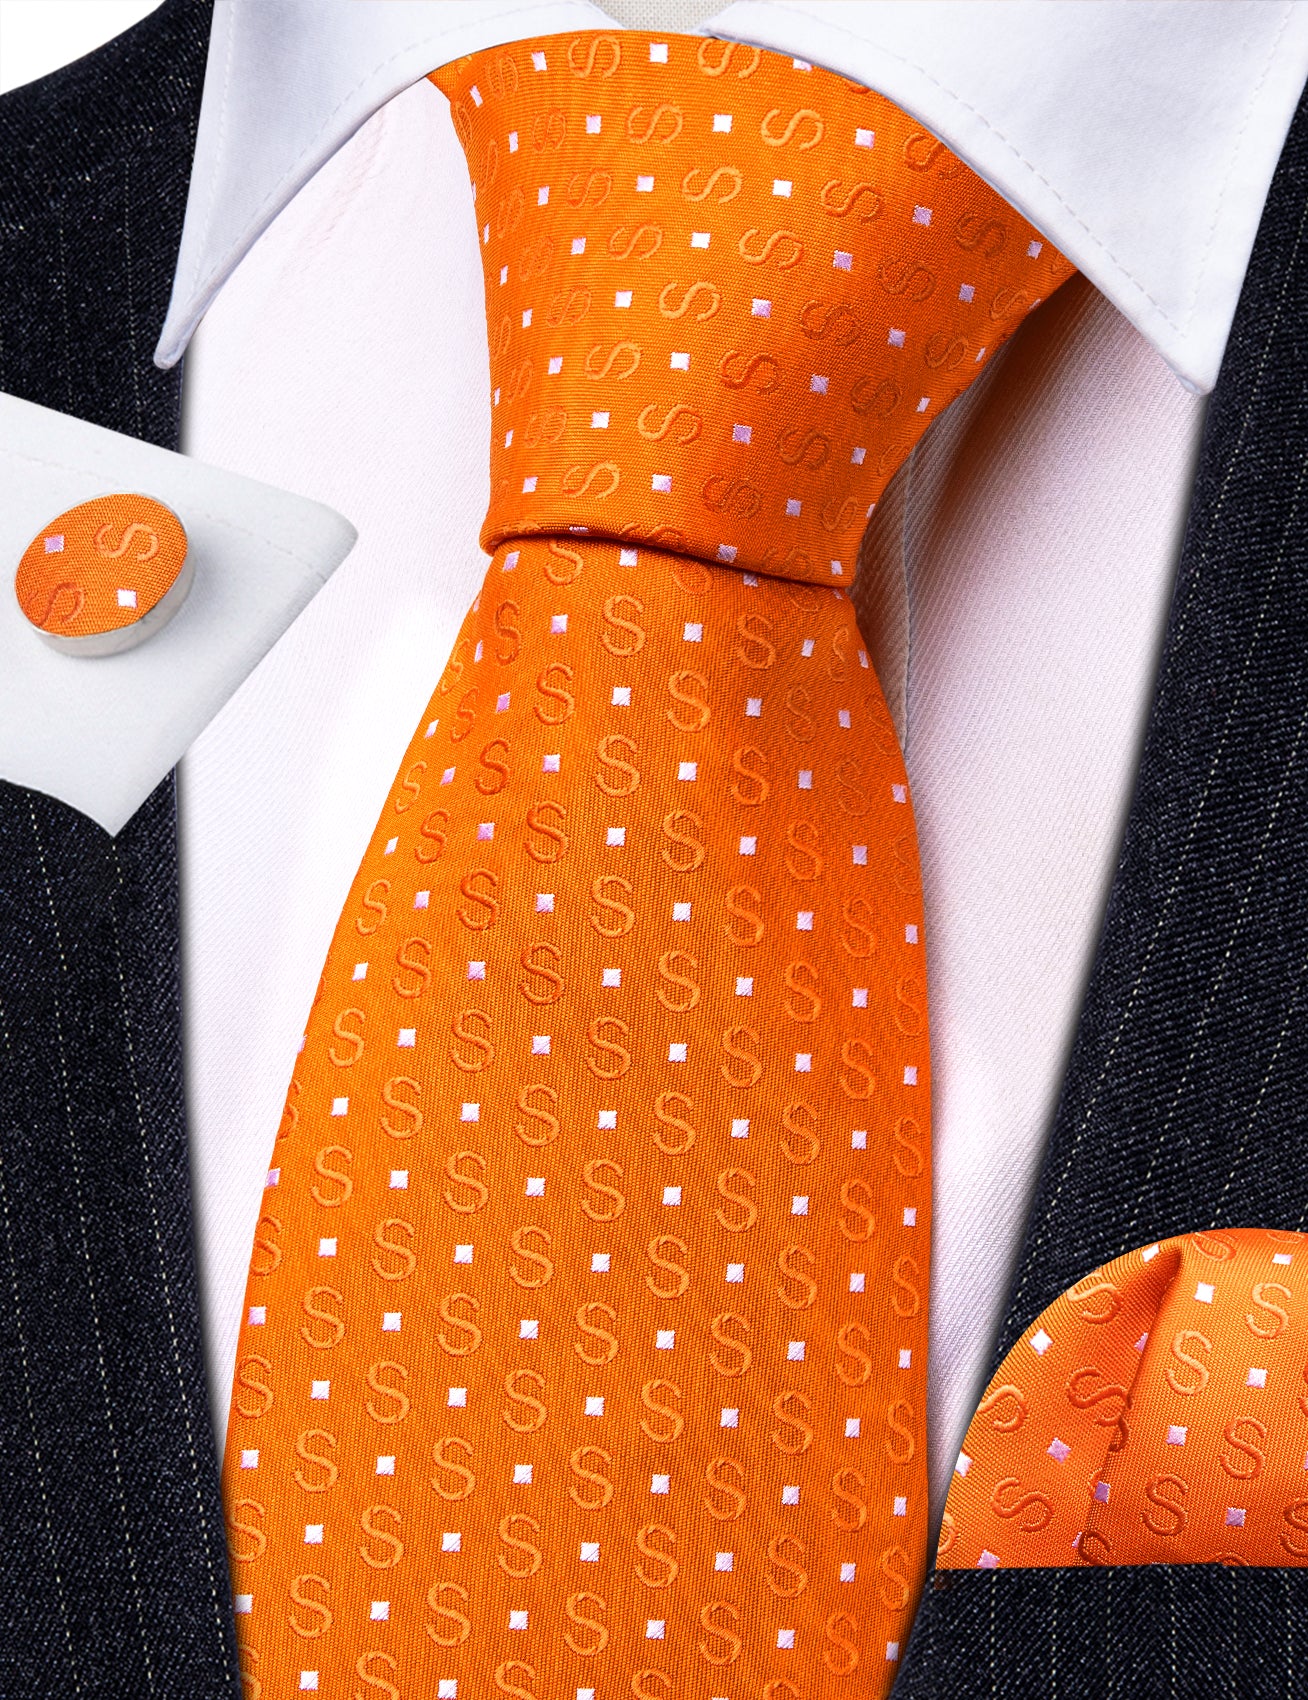 Orange White Floral Silk Tie Pocket Square Cufflinks Set